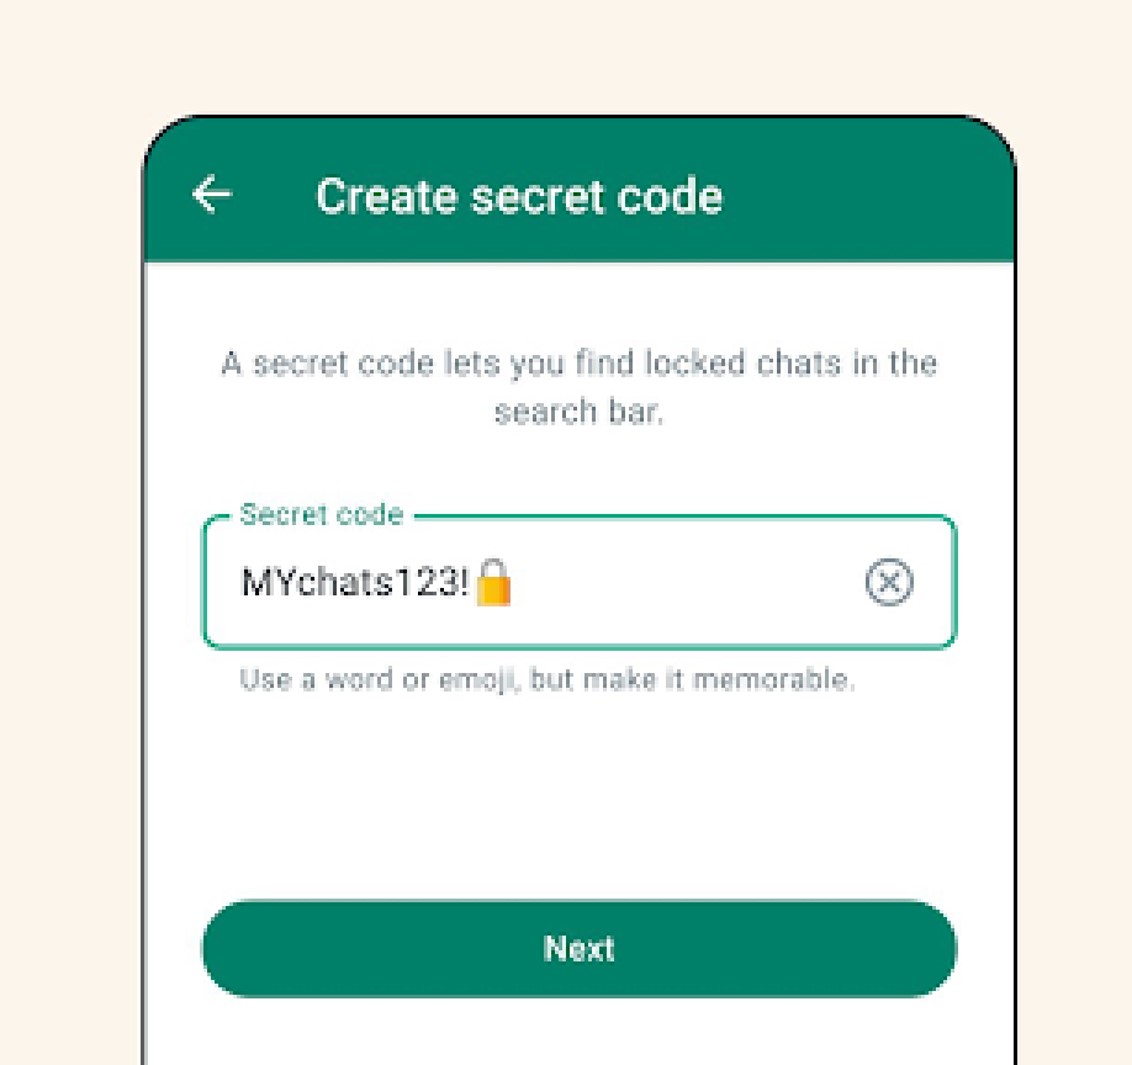 Crie um código secreto forte combinando números, letras, emojis e símbolos